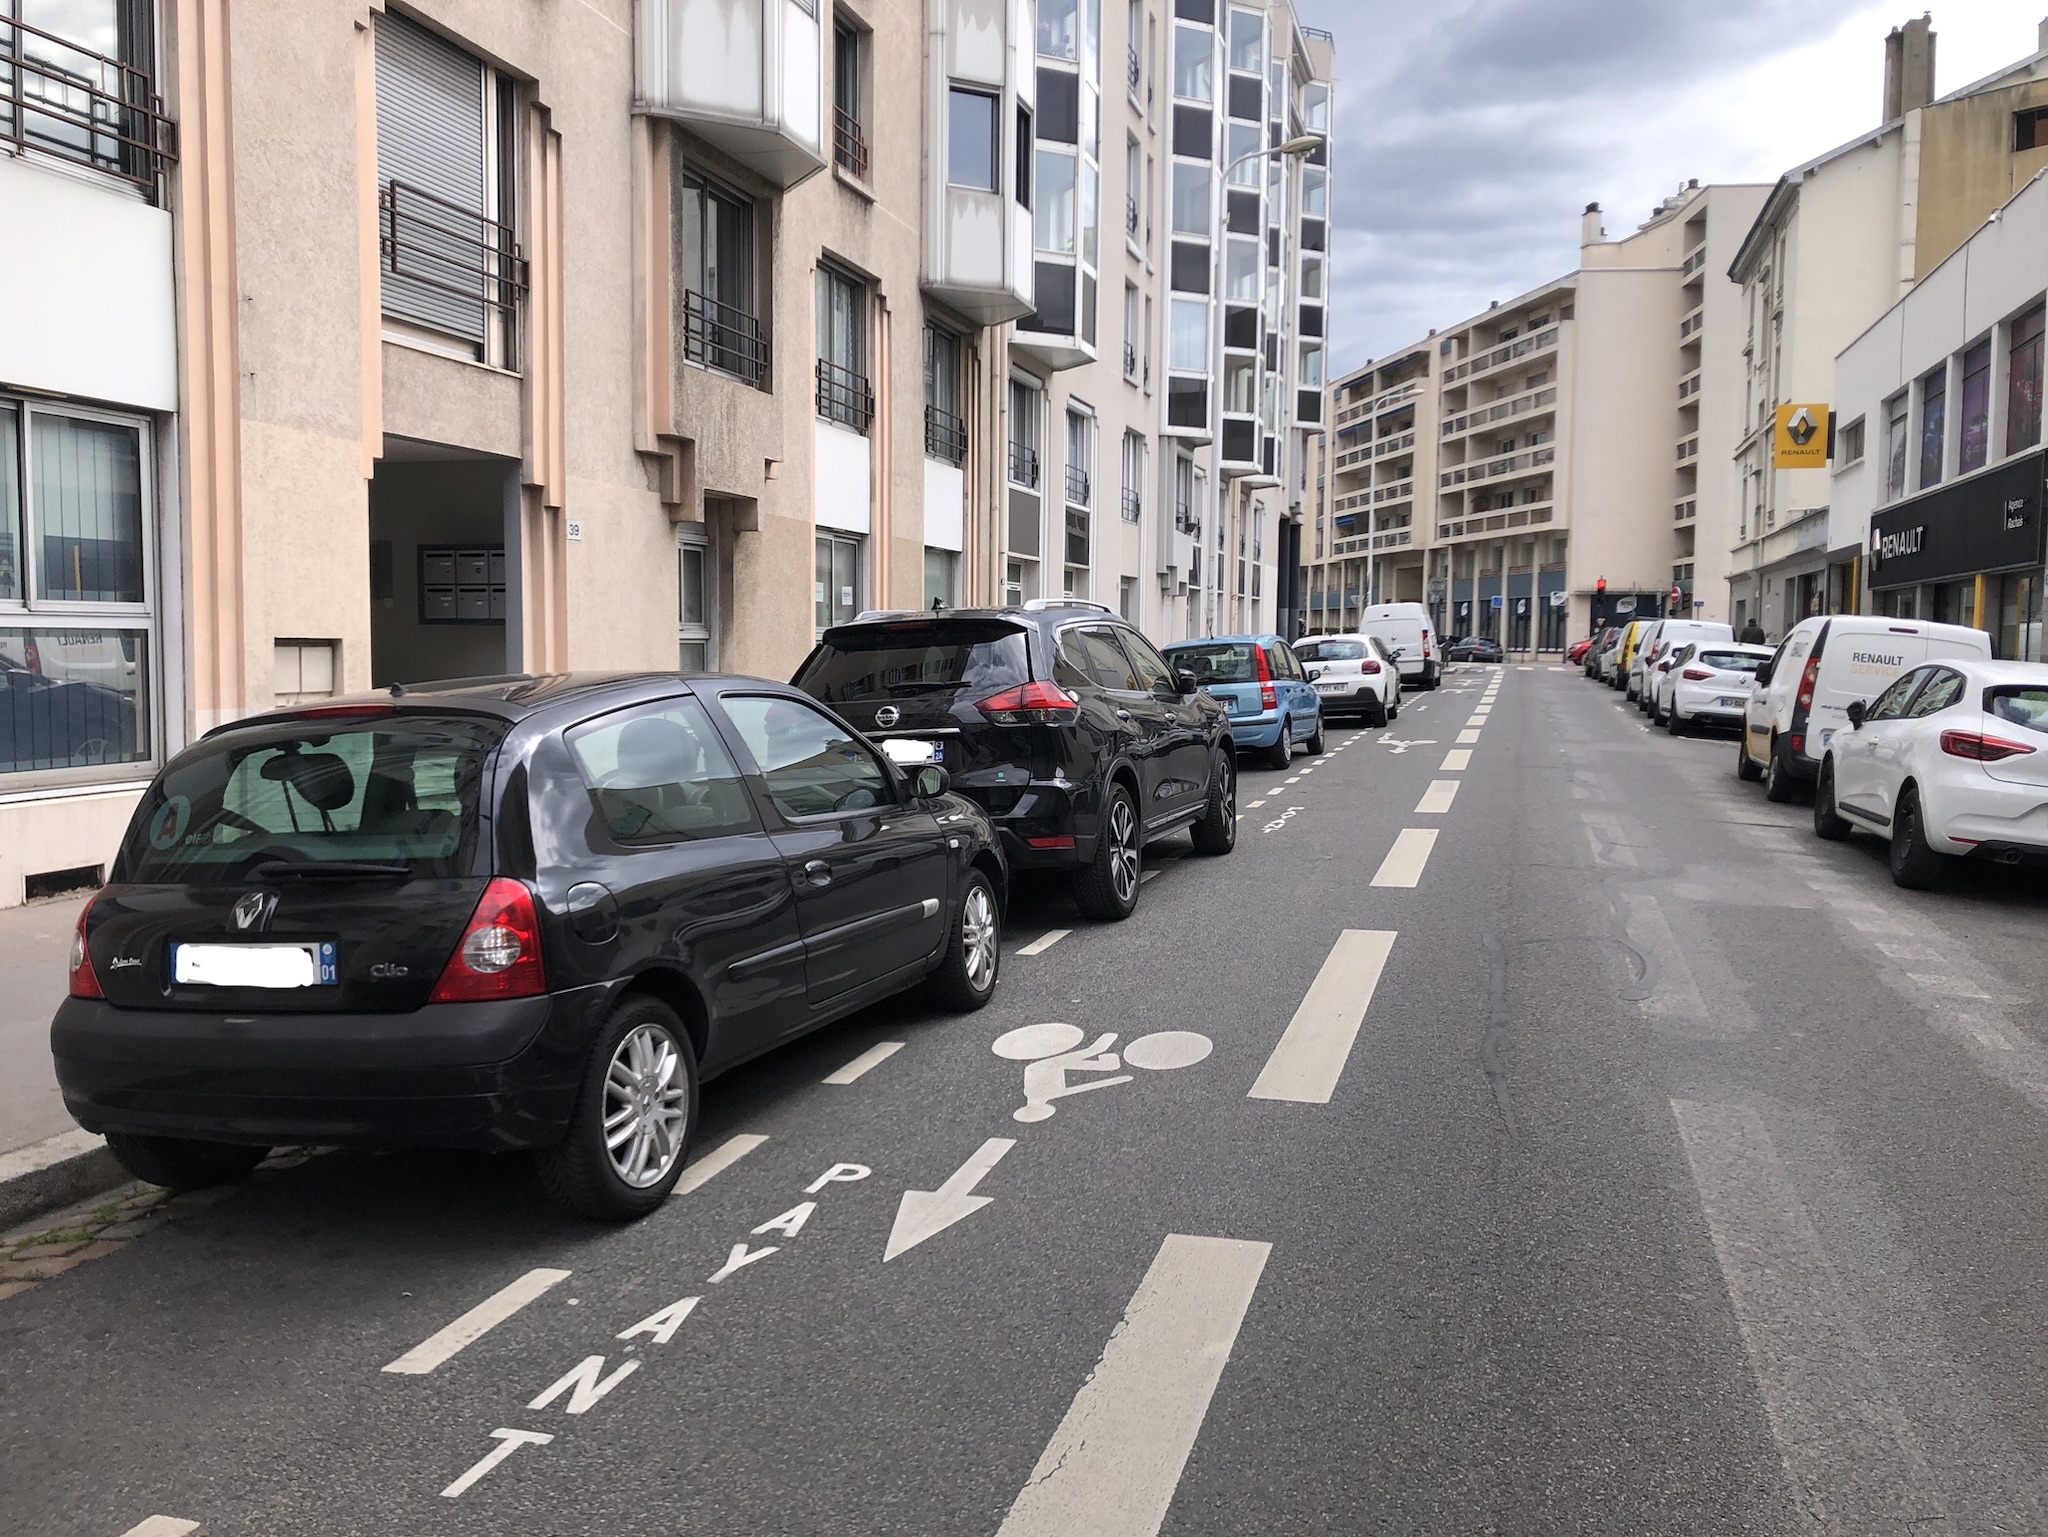 SUV pénalisés, tarif solidaire : la Ville de Lyon change de politique de stationnement